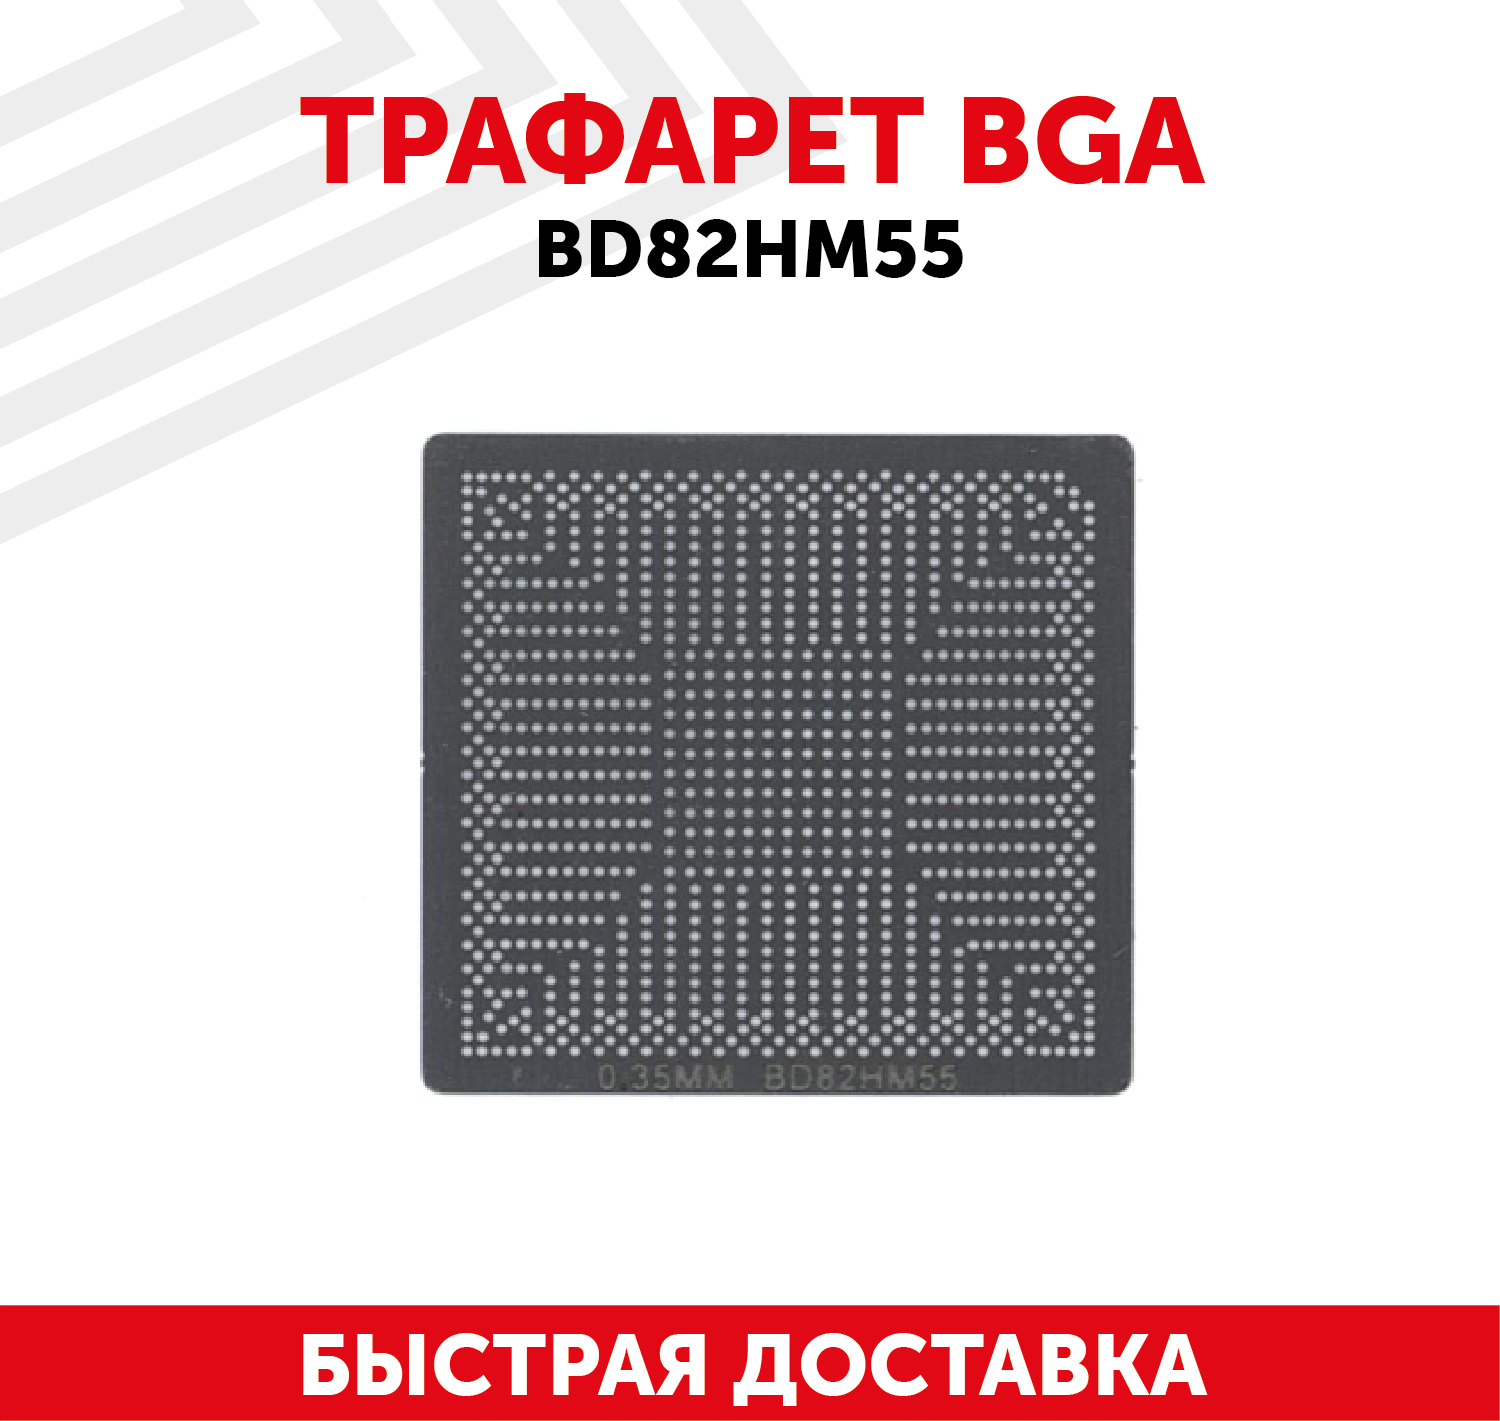 Трафарет BGA BD82HM55